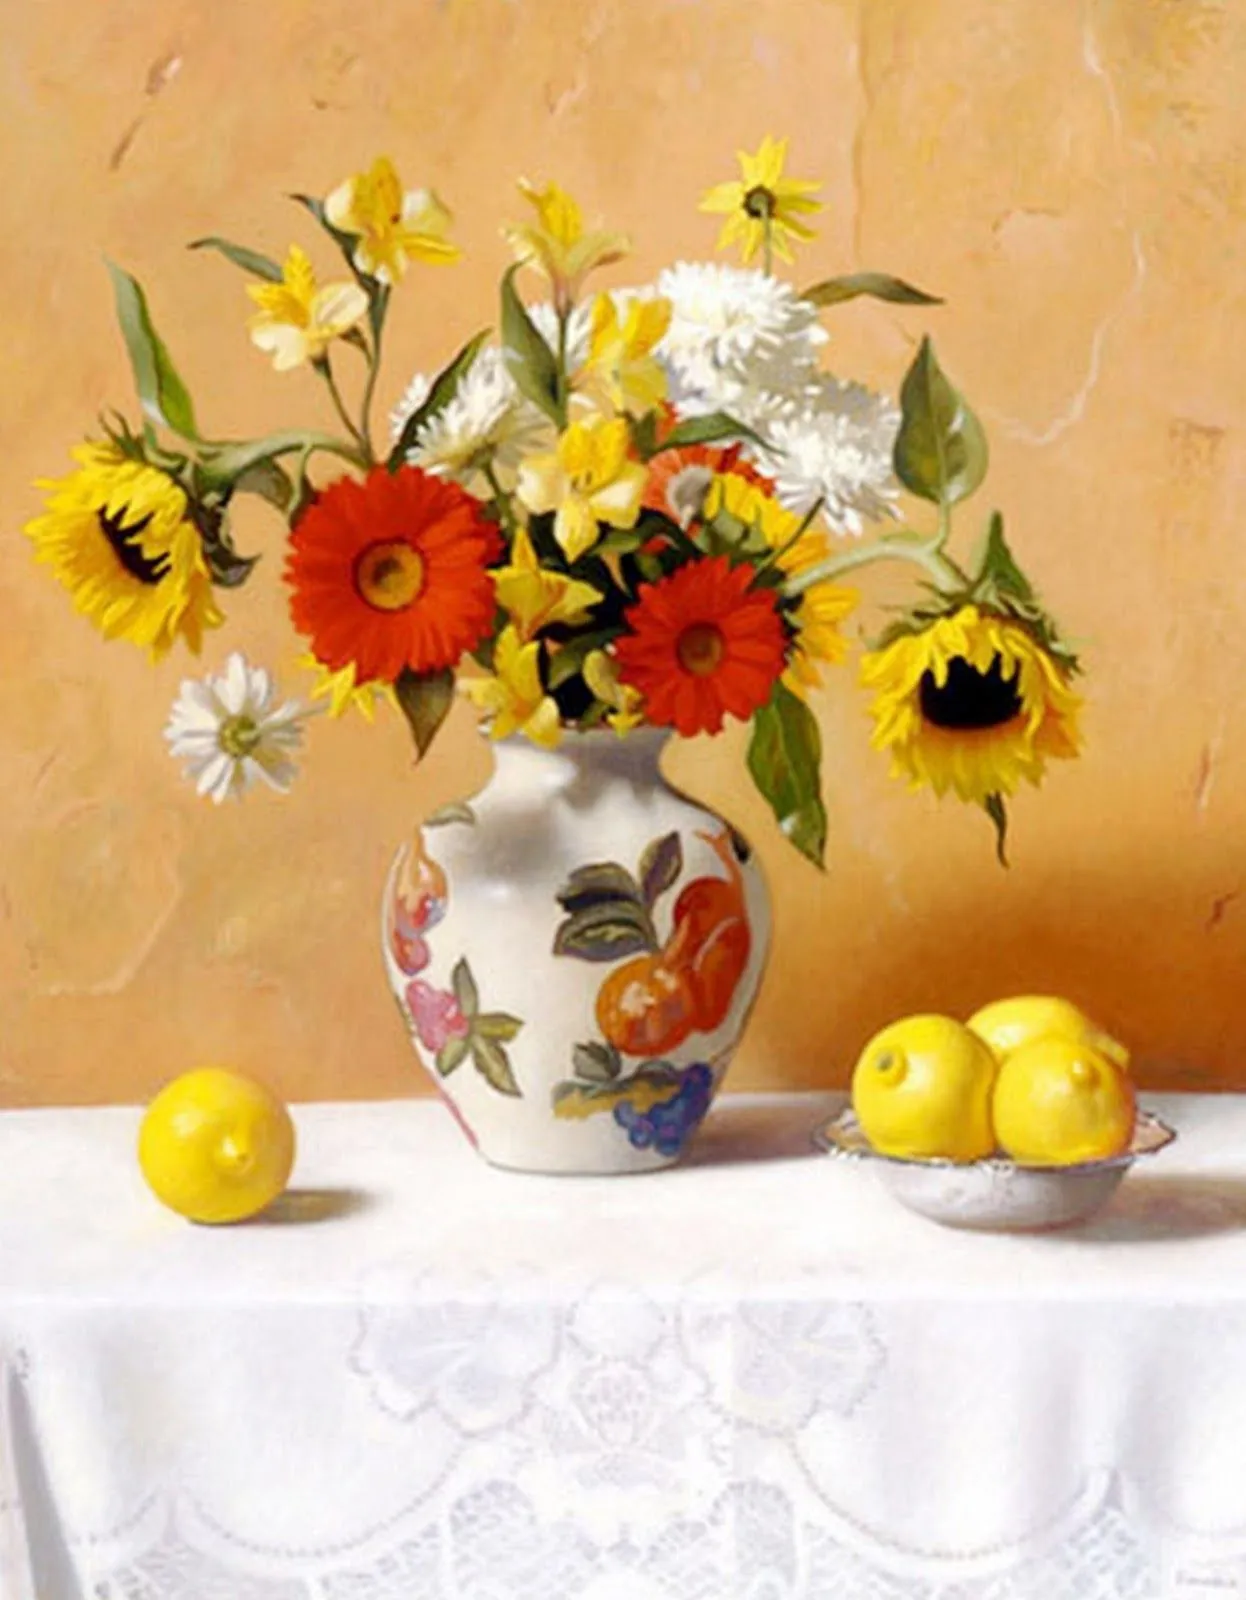 Paisajes y Bodegones: Jarrón con Flores en Bodegones, Pintura Realista